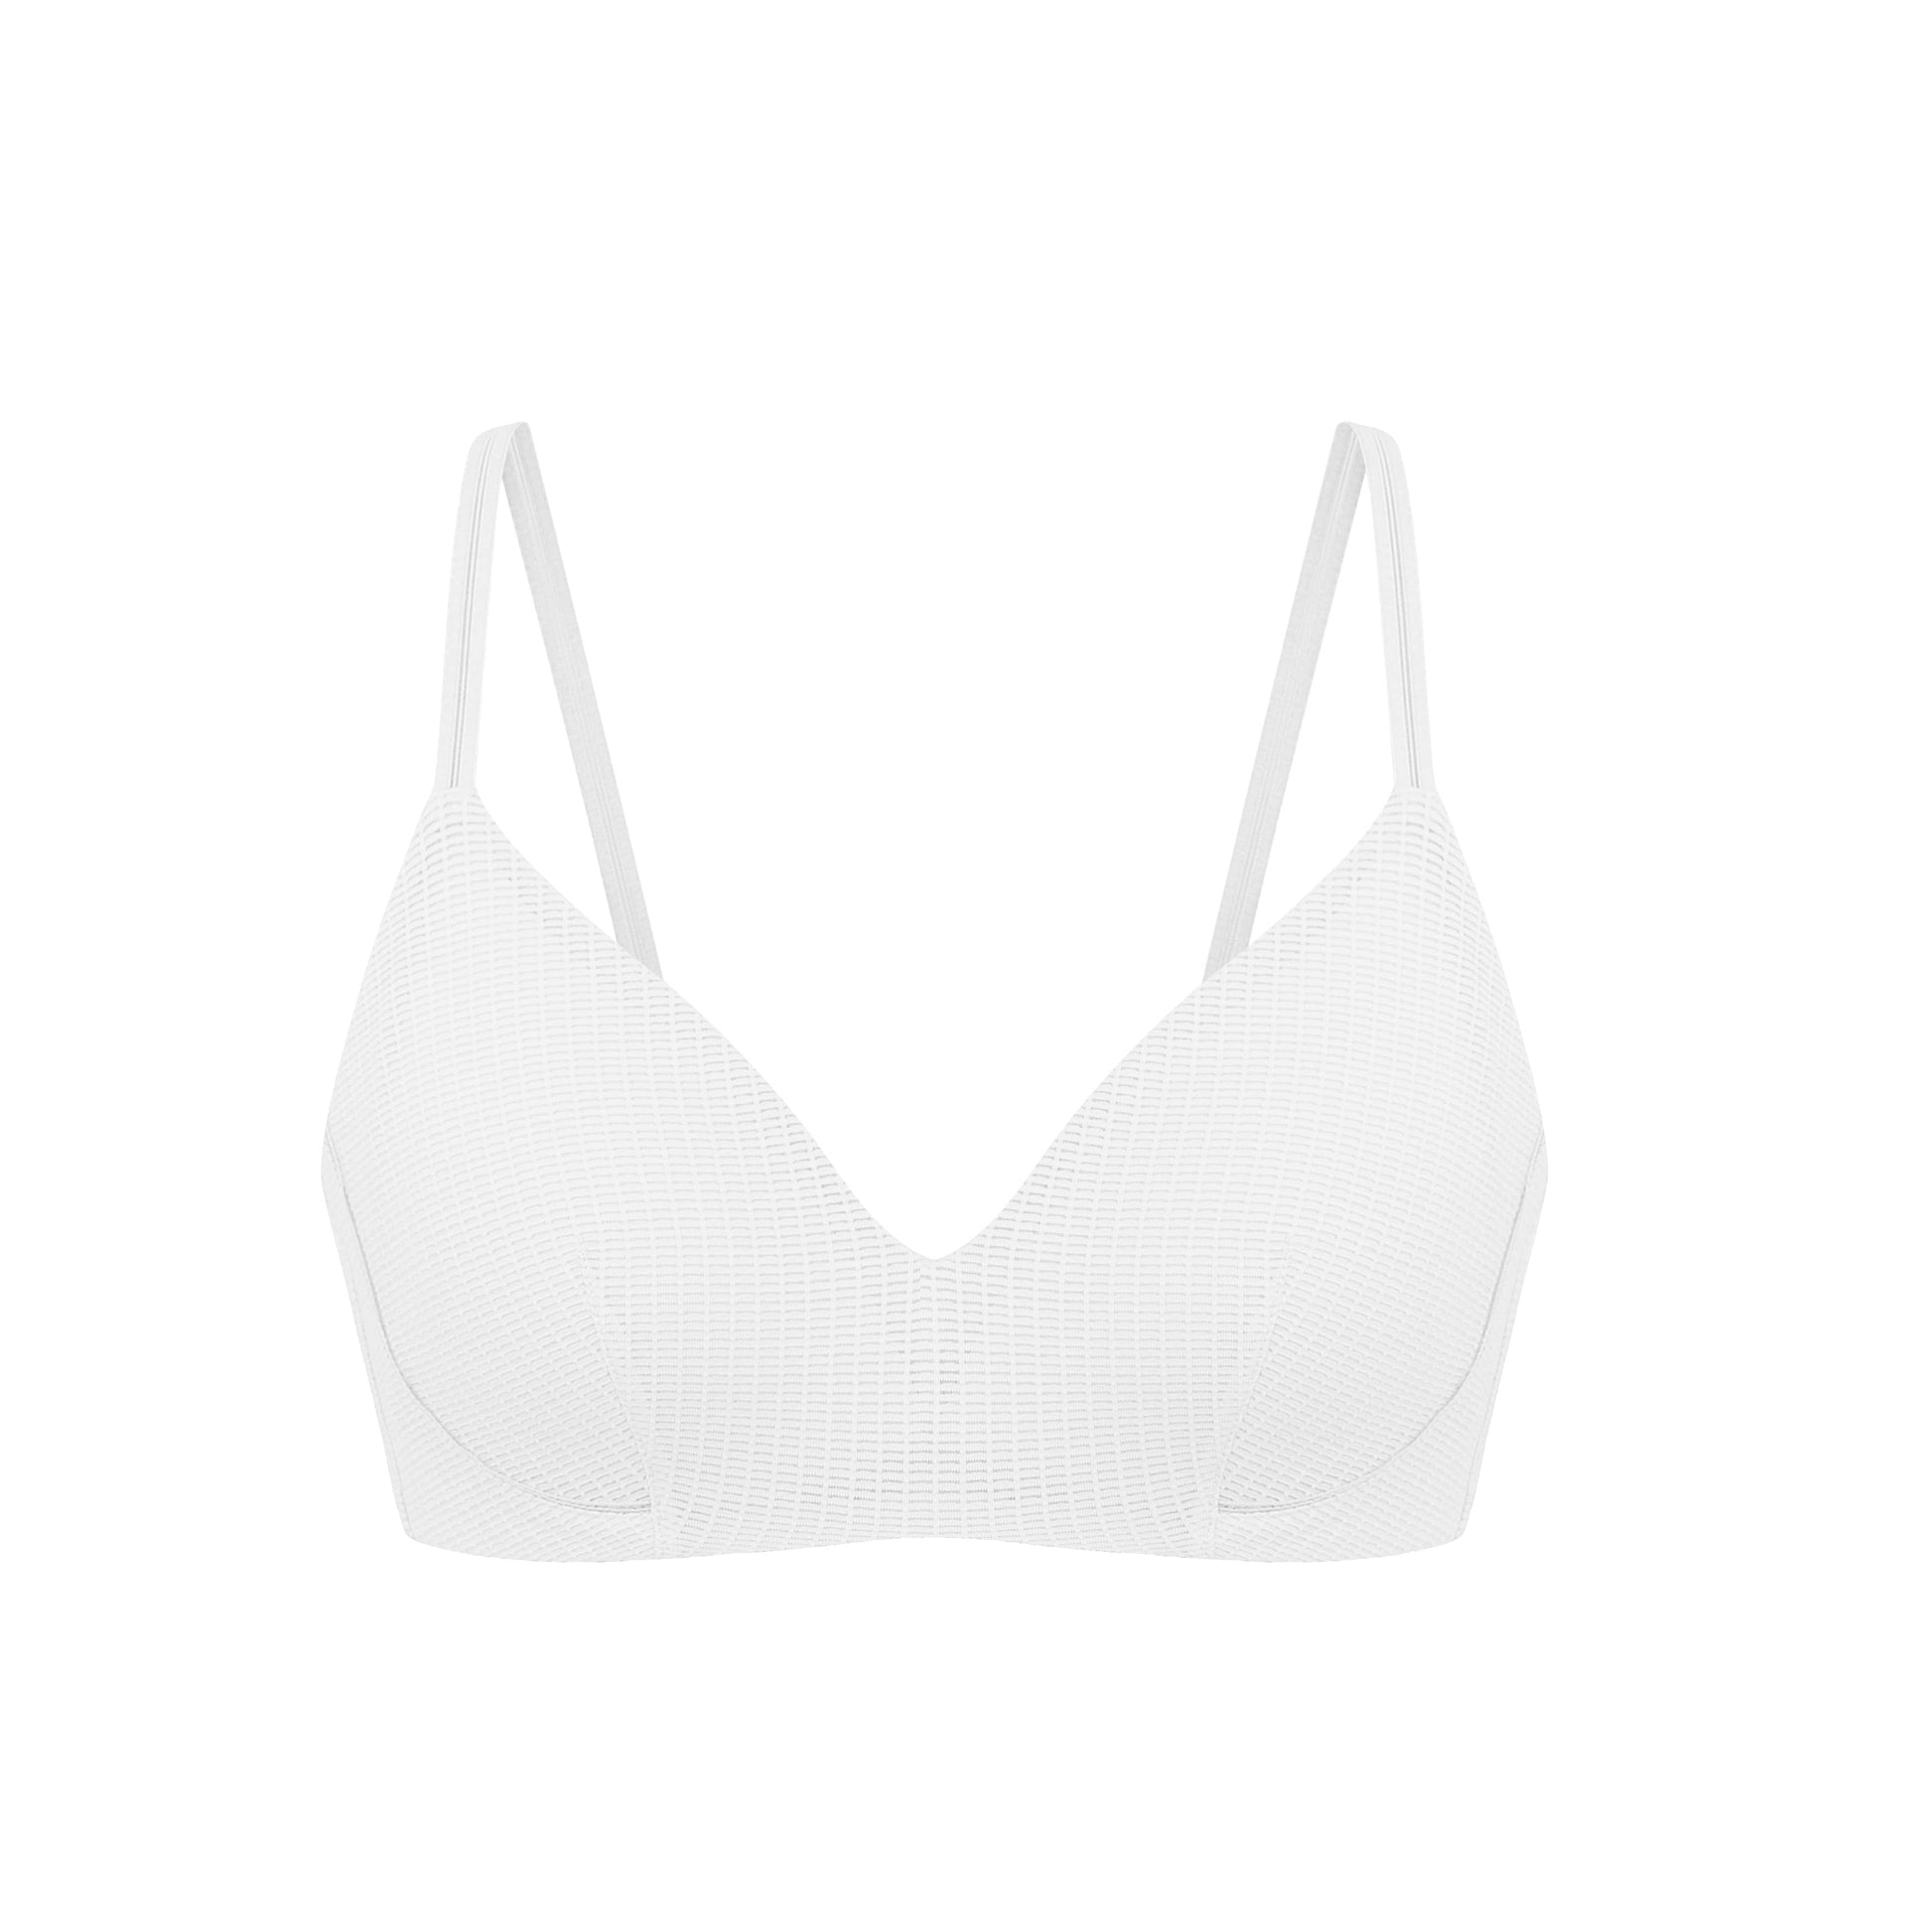 back of white bra